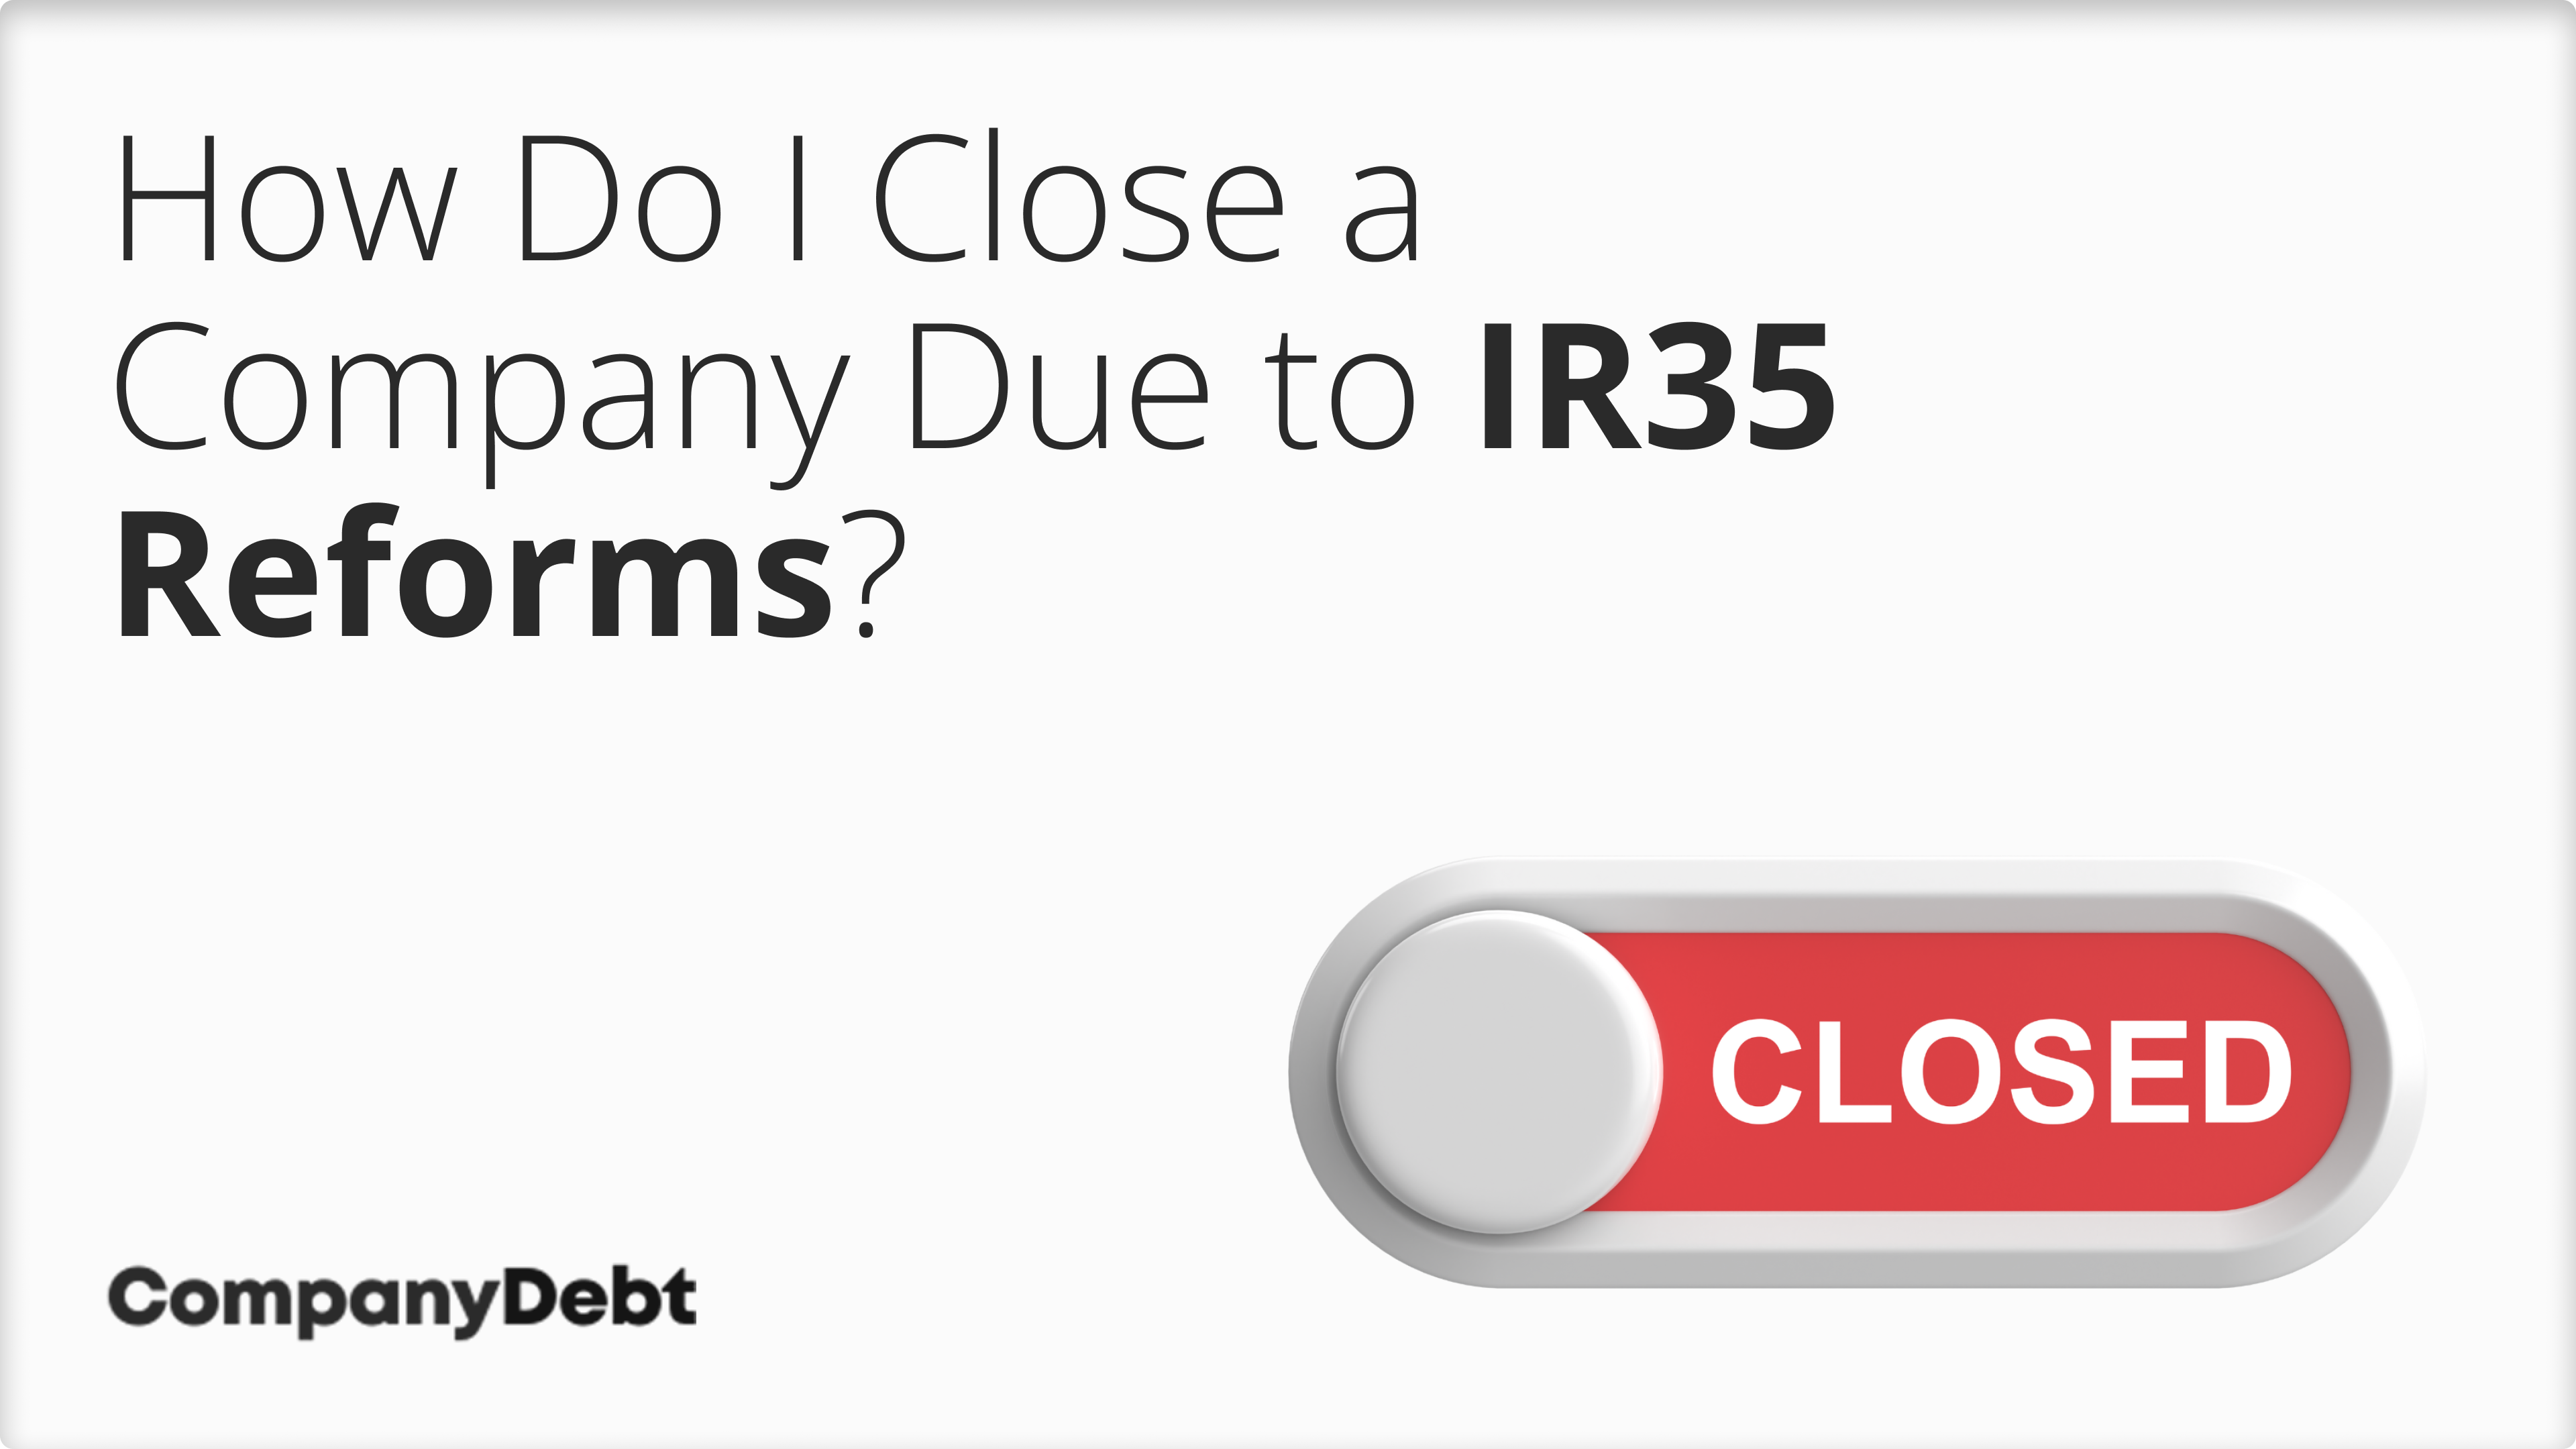 How Do I Close a Company Due to IR35 Reforms?